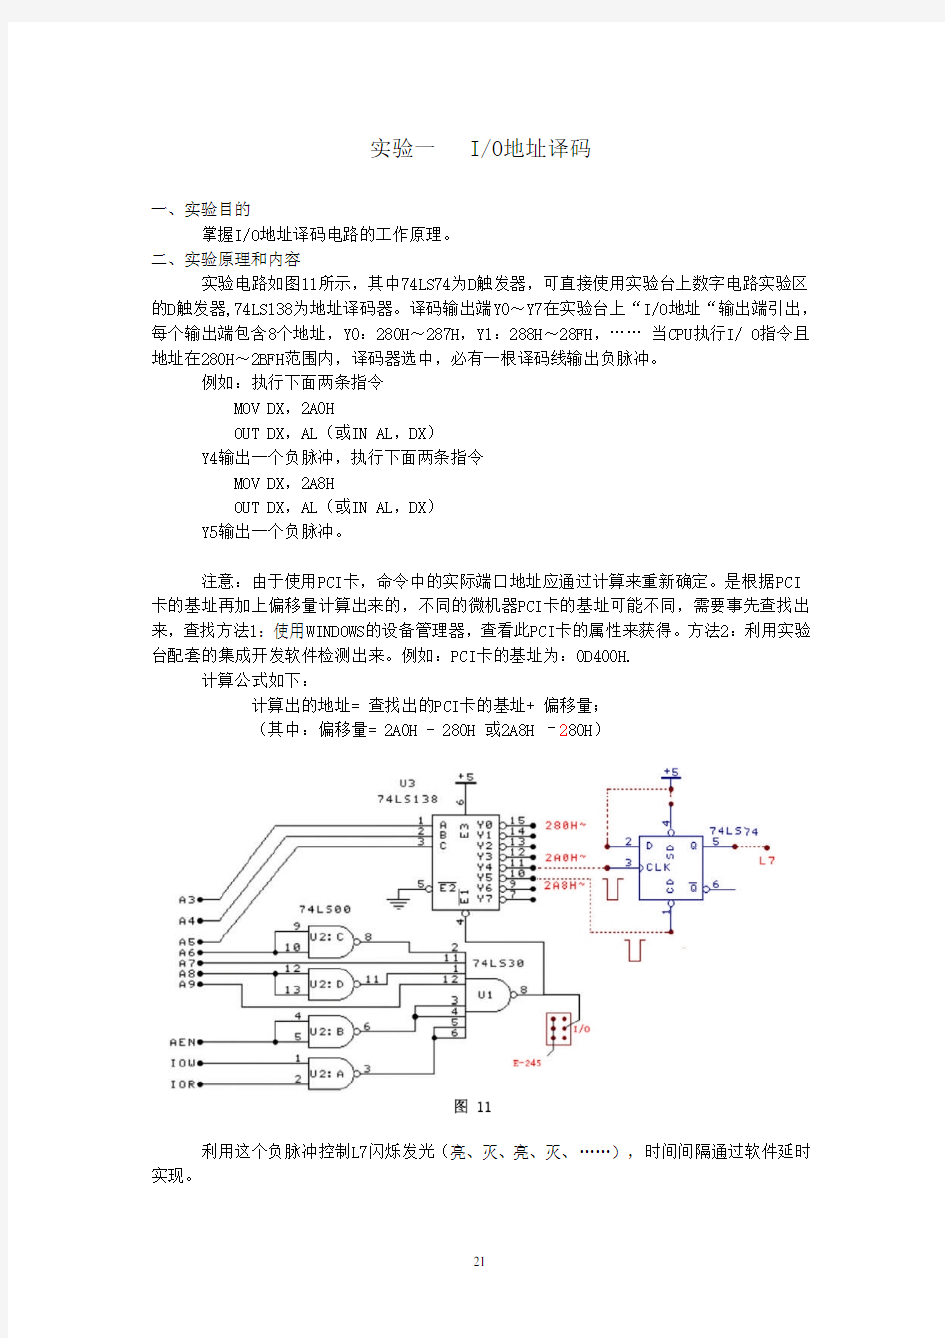 微机原理与接口技术实验指导书(2 译码电路、简单并口、8253实验)